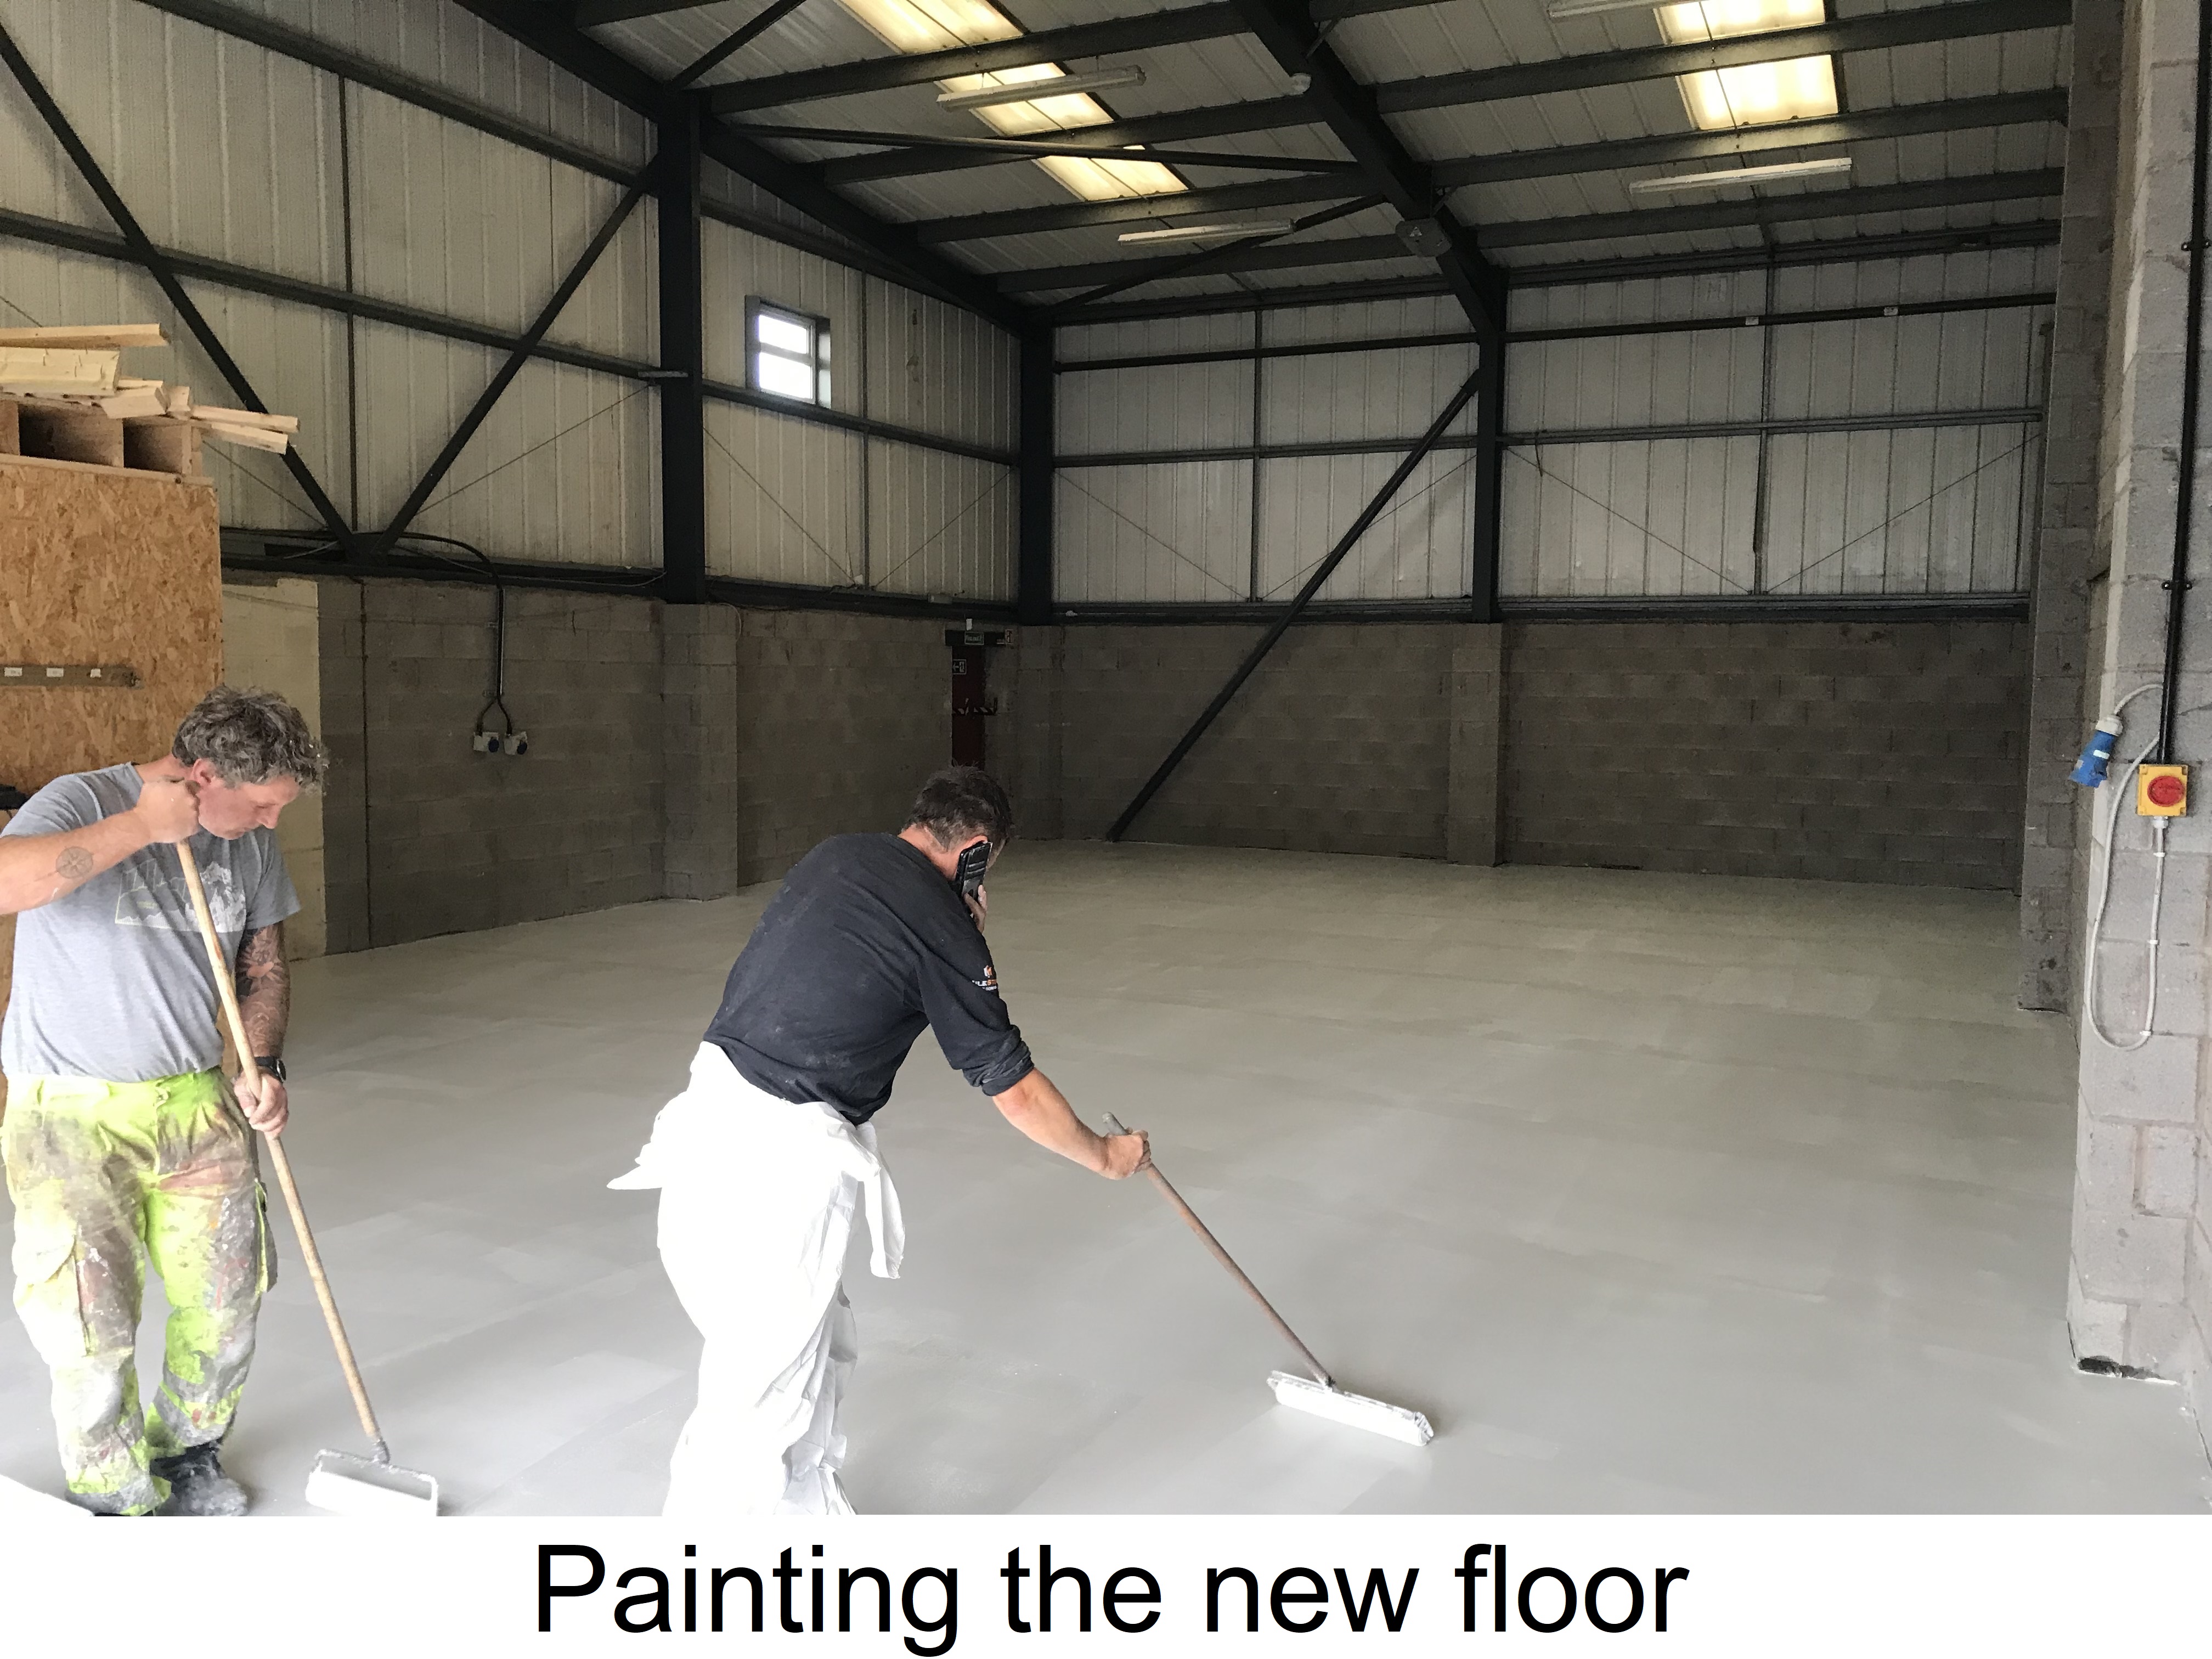 https://0201.nccdn.net/1_2/000/000/0c0/919/6.-painting-floor.jpg